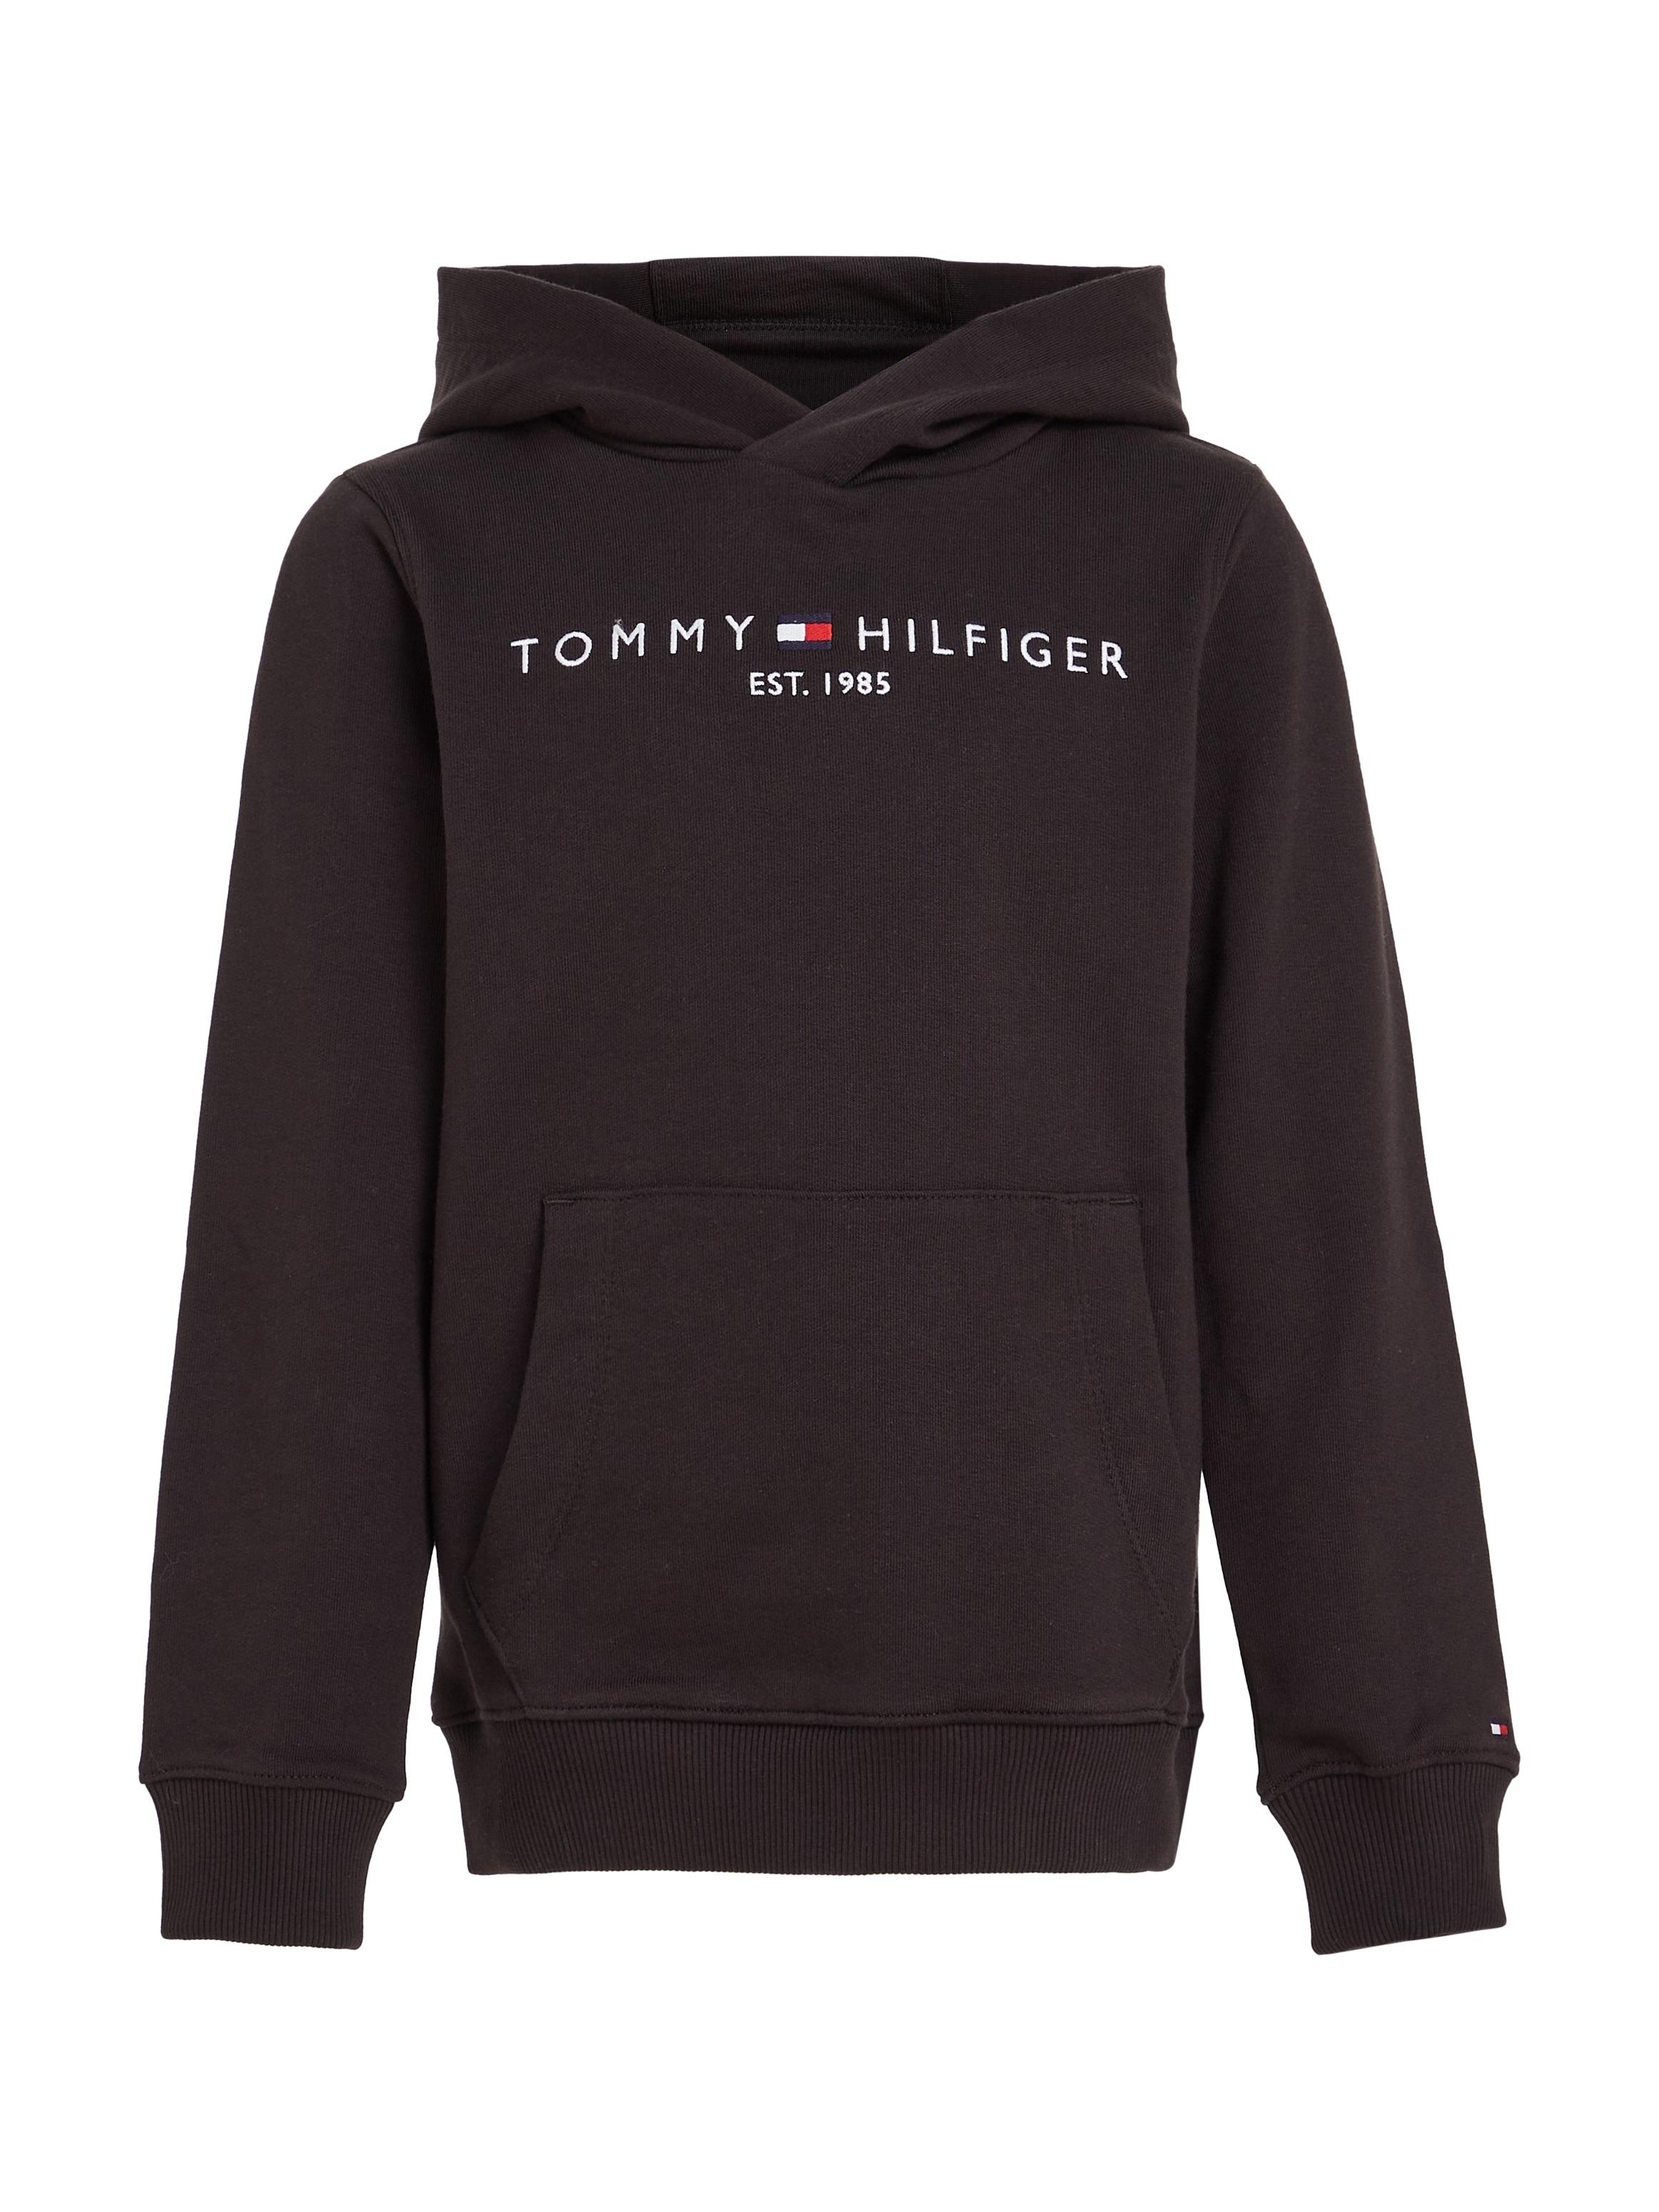 Trendige Tommy Hilfiger Kapuzensweatshirt »ESSENTIAL HOODIE«, Kinder Kids  Junior MiniMe,für Jungen und Mädchen ohne Mindestbestellwert bestellen